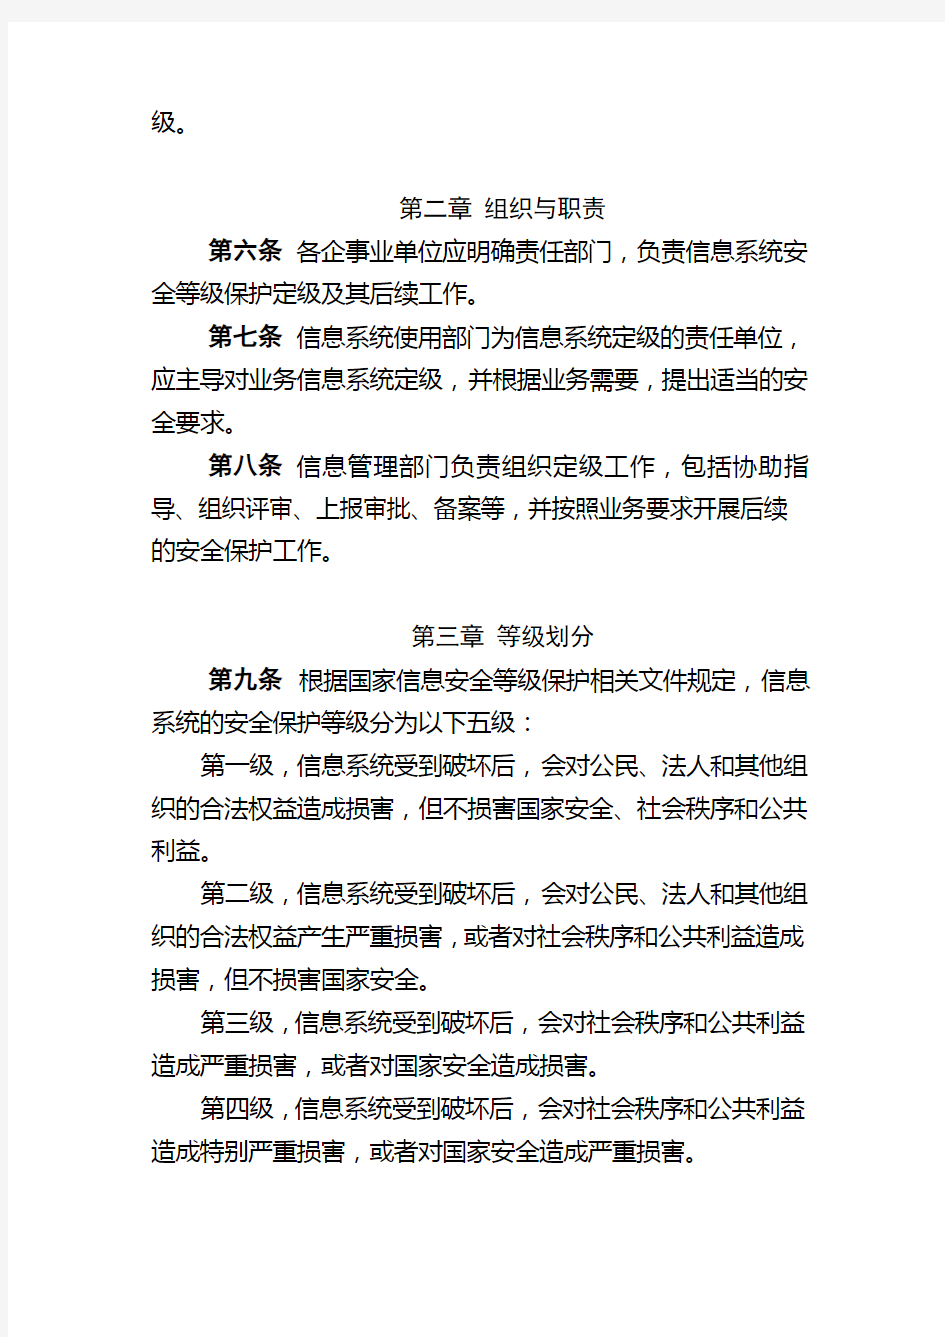 中国石化信息系统安全等级保护定级工作指导意见